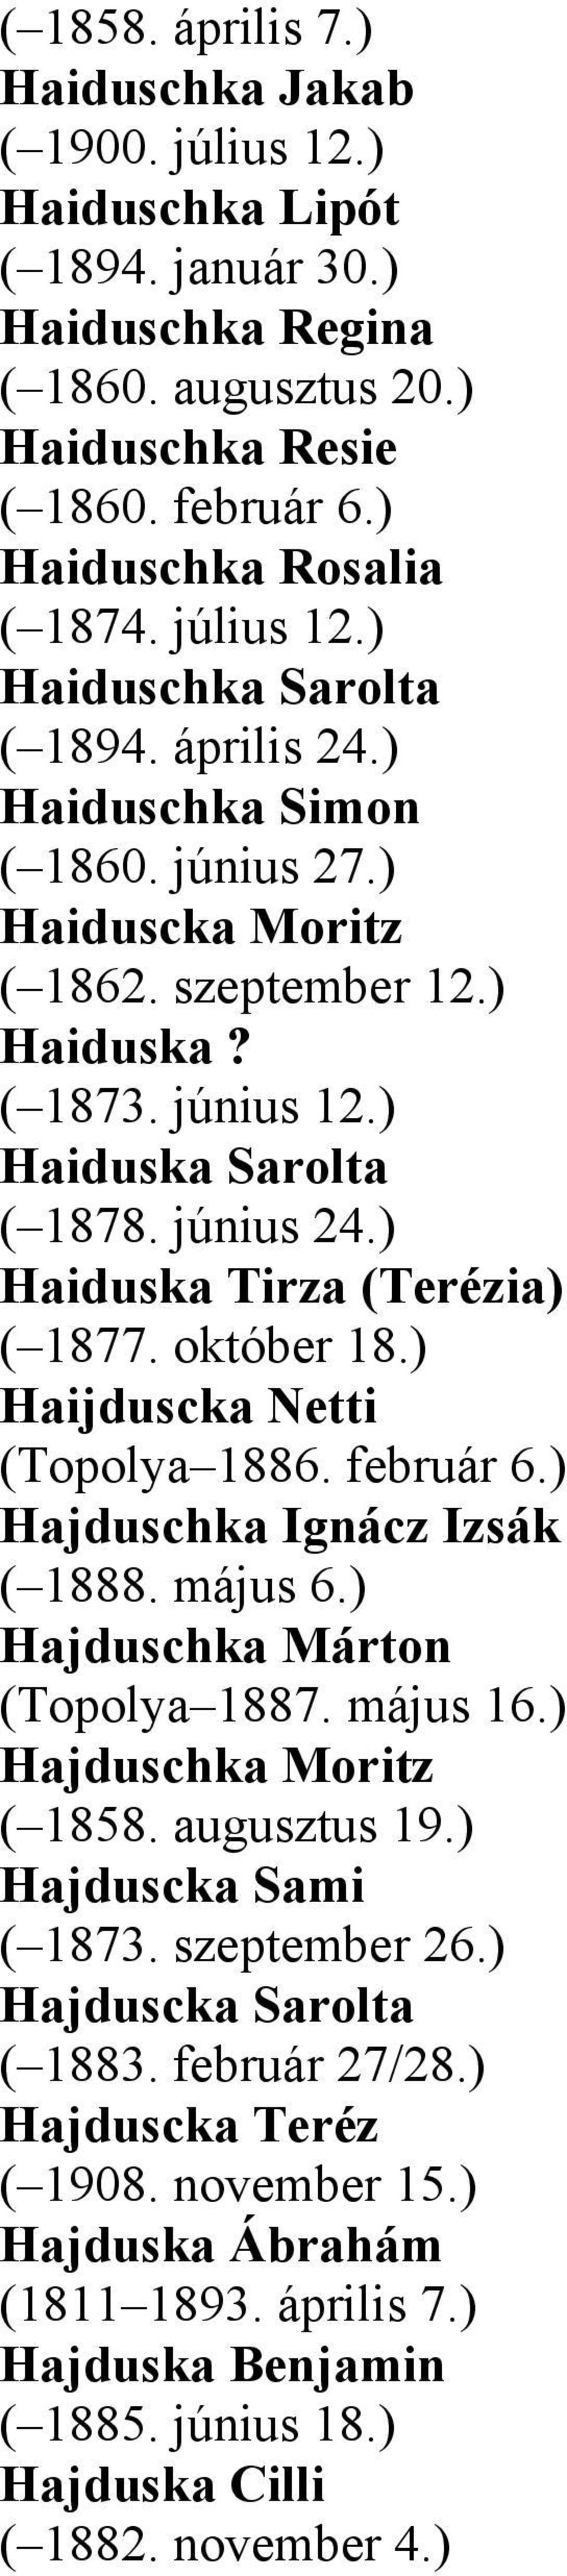 ) Haiduska Tirza (Terézia) ( 1877. október 18.) Haijduscka Netti (Topolya 1886. február 6.) Hajduschka Ignácz Izsák ( 1888. május 6.) Hajduschka Márton (Topolya 1887. május 16.